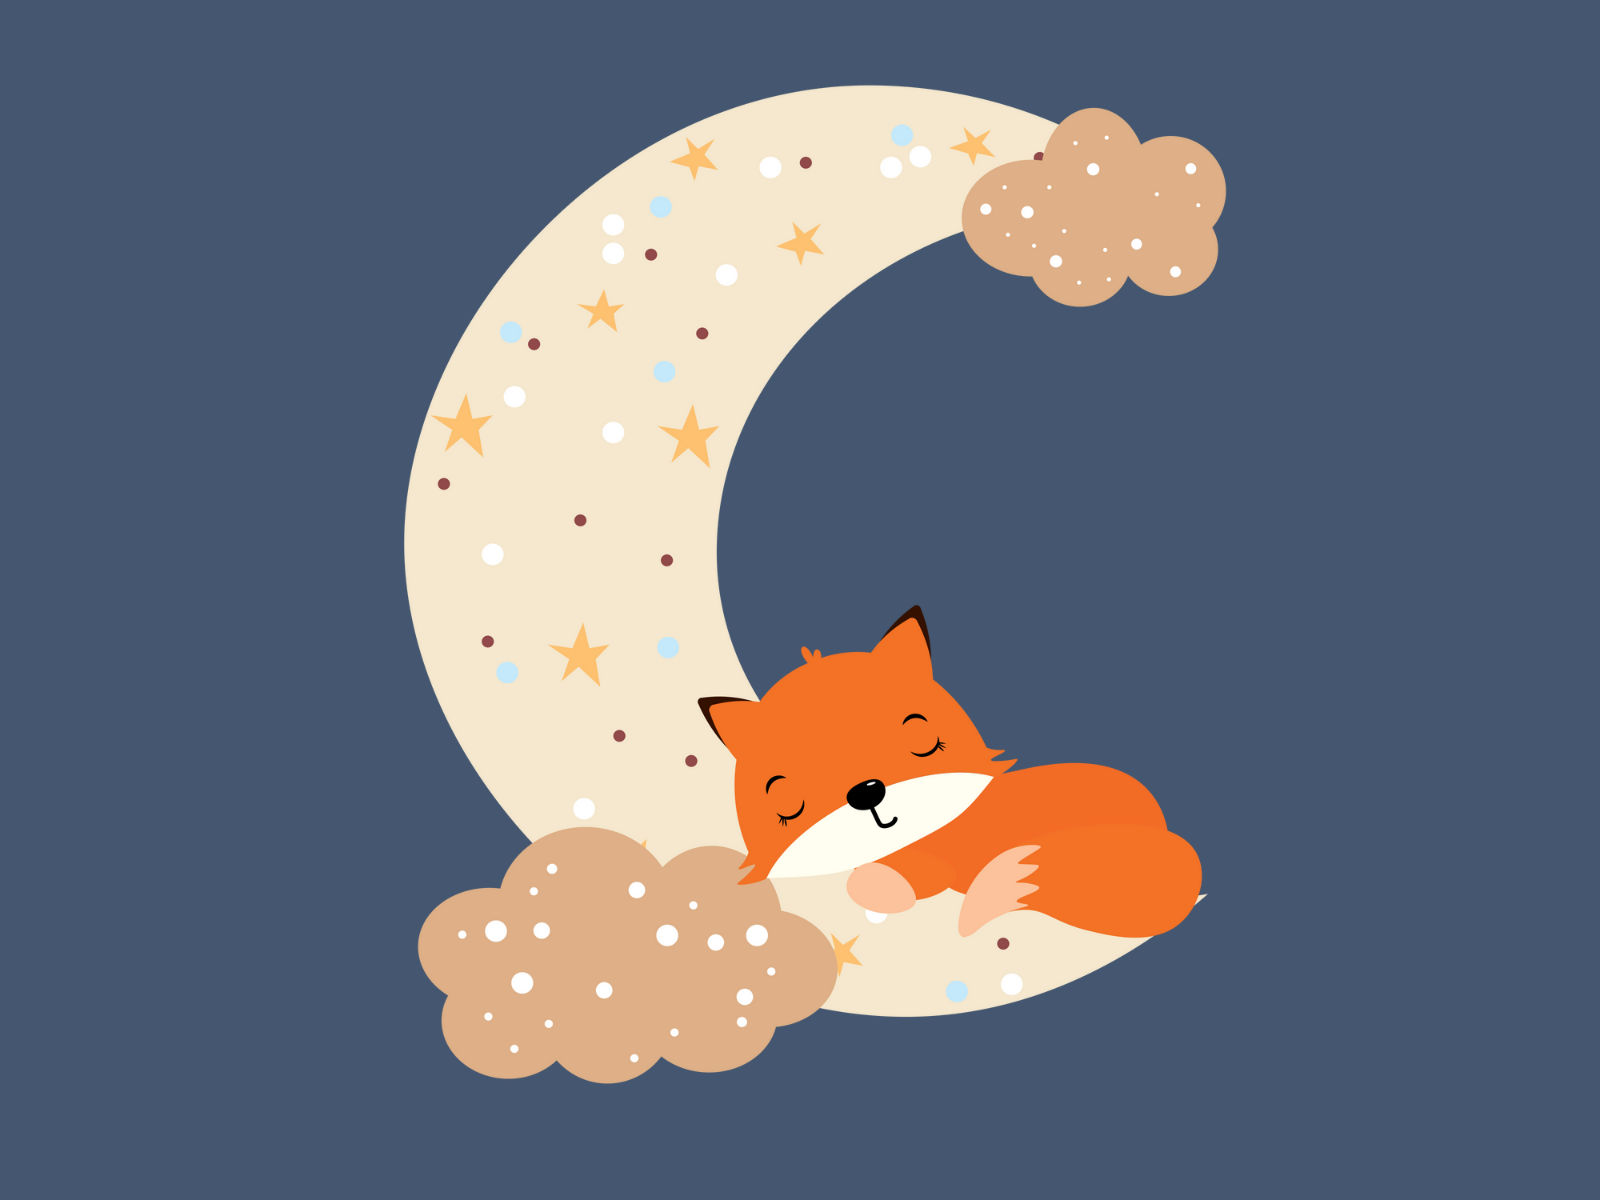 Sleeping fox by Aziza Yaminova on Dribbble